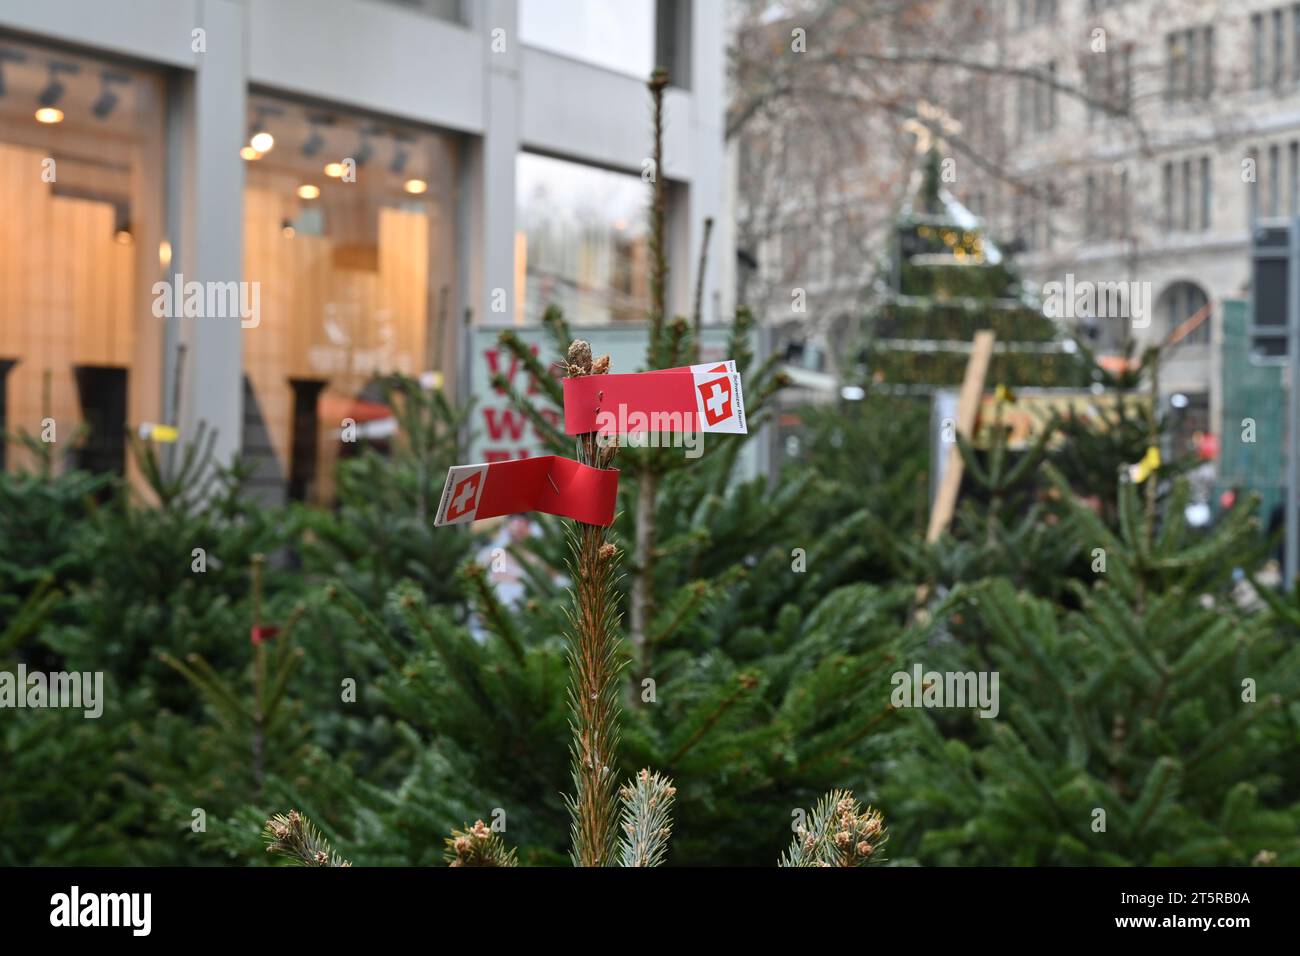 Vente de sapins de Noël sur trottoir dans le centre-ville. Banque D'Images